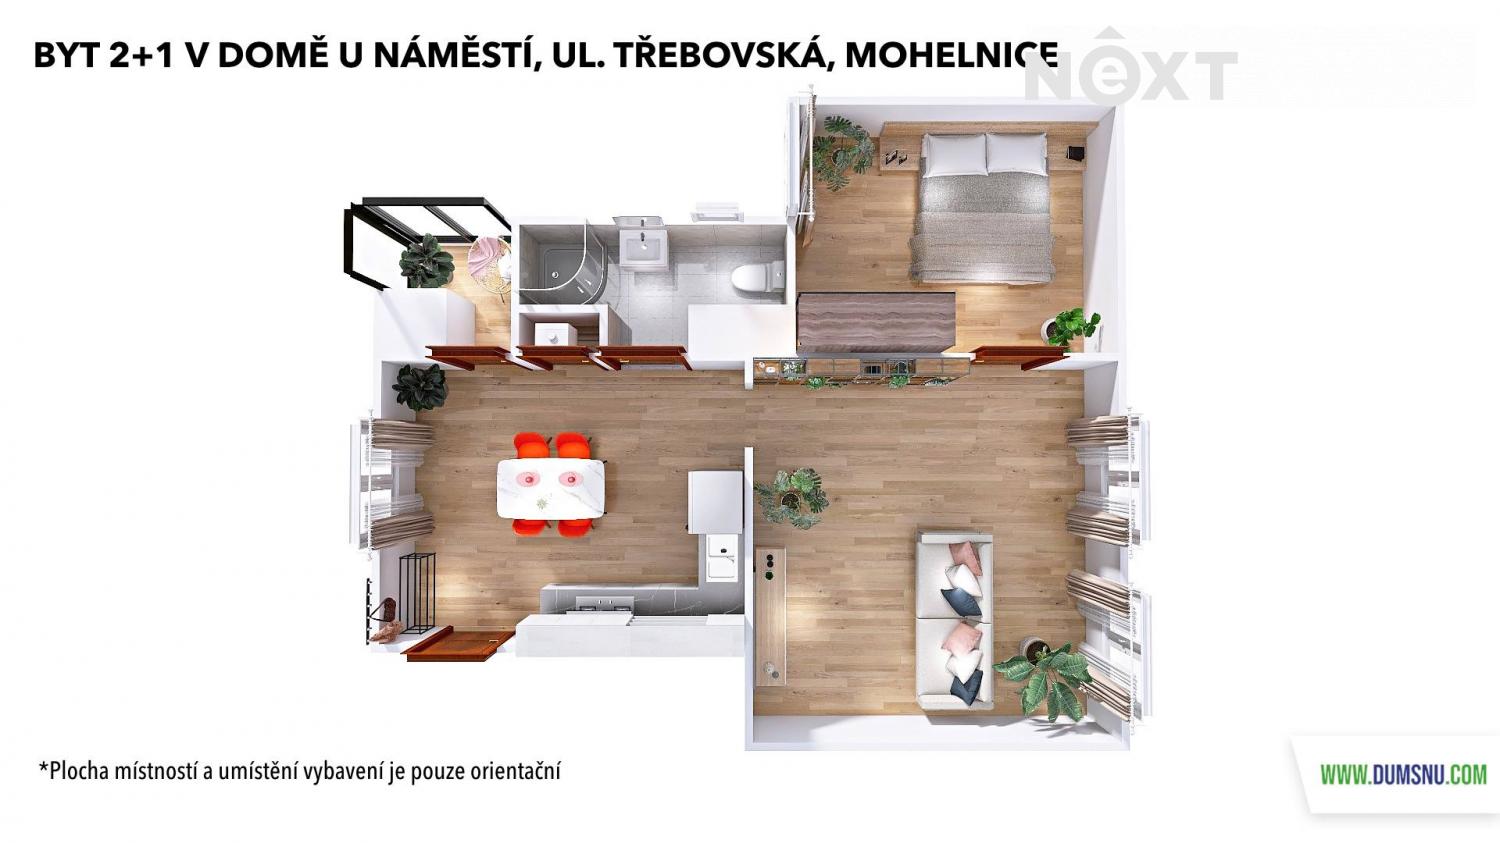 Pronájem byt 2+1, 53㎡|Olomoucký kraj, Šumperk, Mohelnice, Třebovská 951/20, 78985